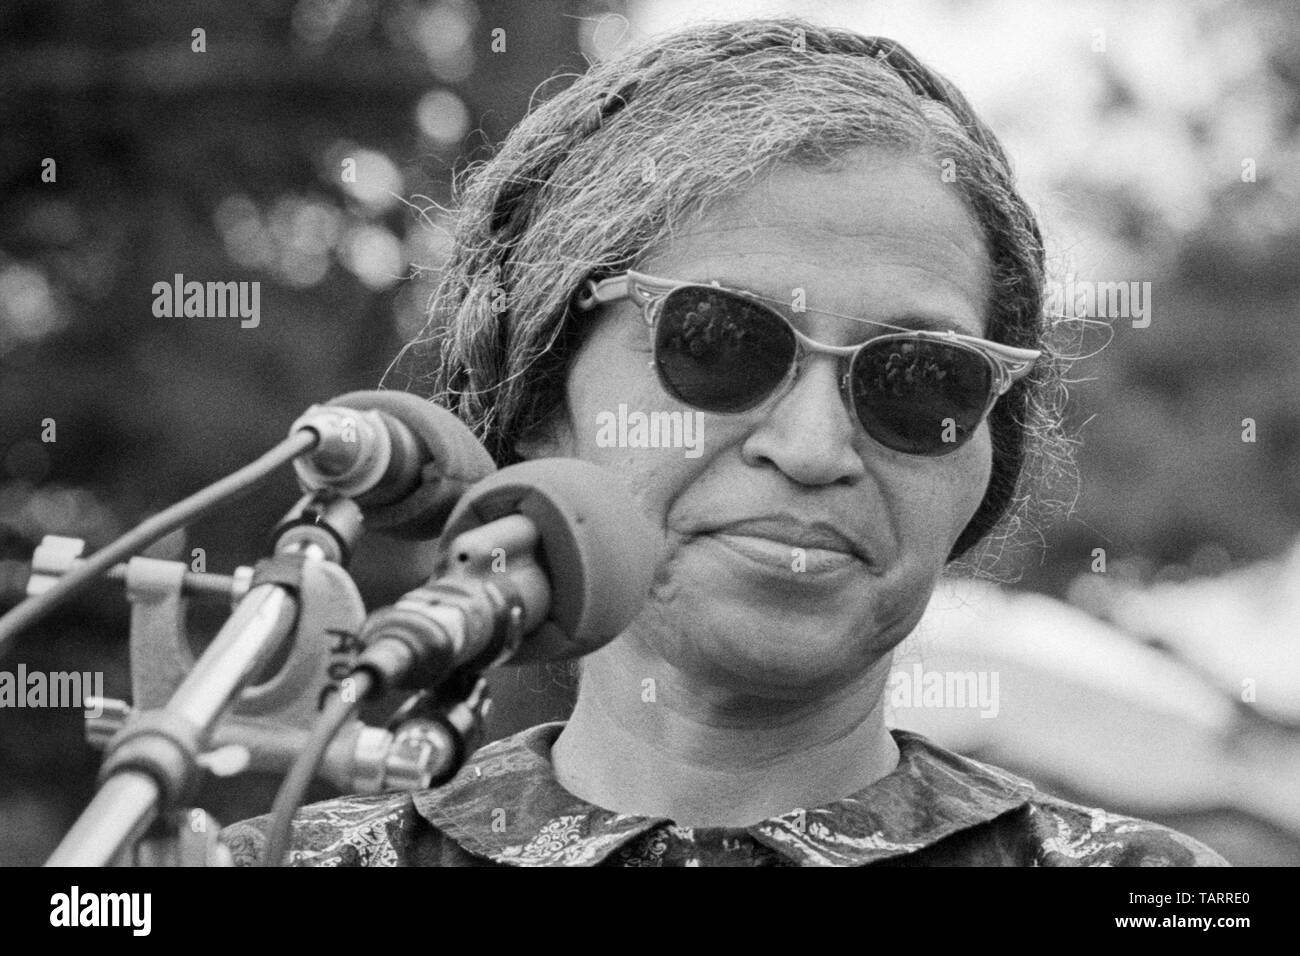 Rosa Parks, für ihren Standplatz gegen Rassendiskriminierung bus Segregation in Montgomery, Alabama bekannt, in der Nähe des Washington Monument im März die Armen auf Washington in Washington, D.C. am 19. Juni 1968. Stockfoto